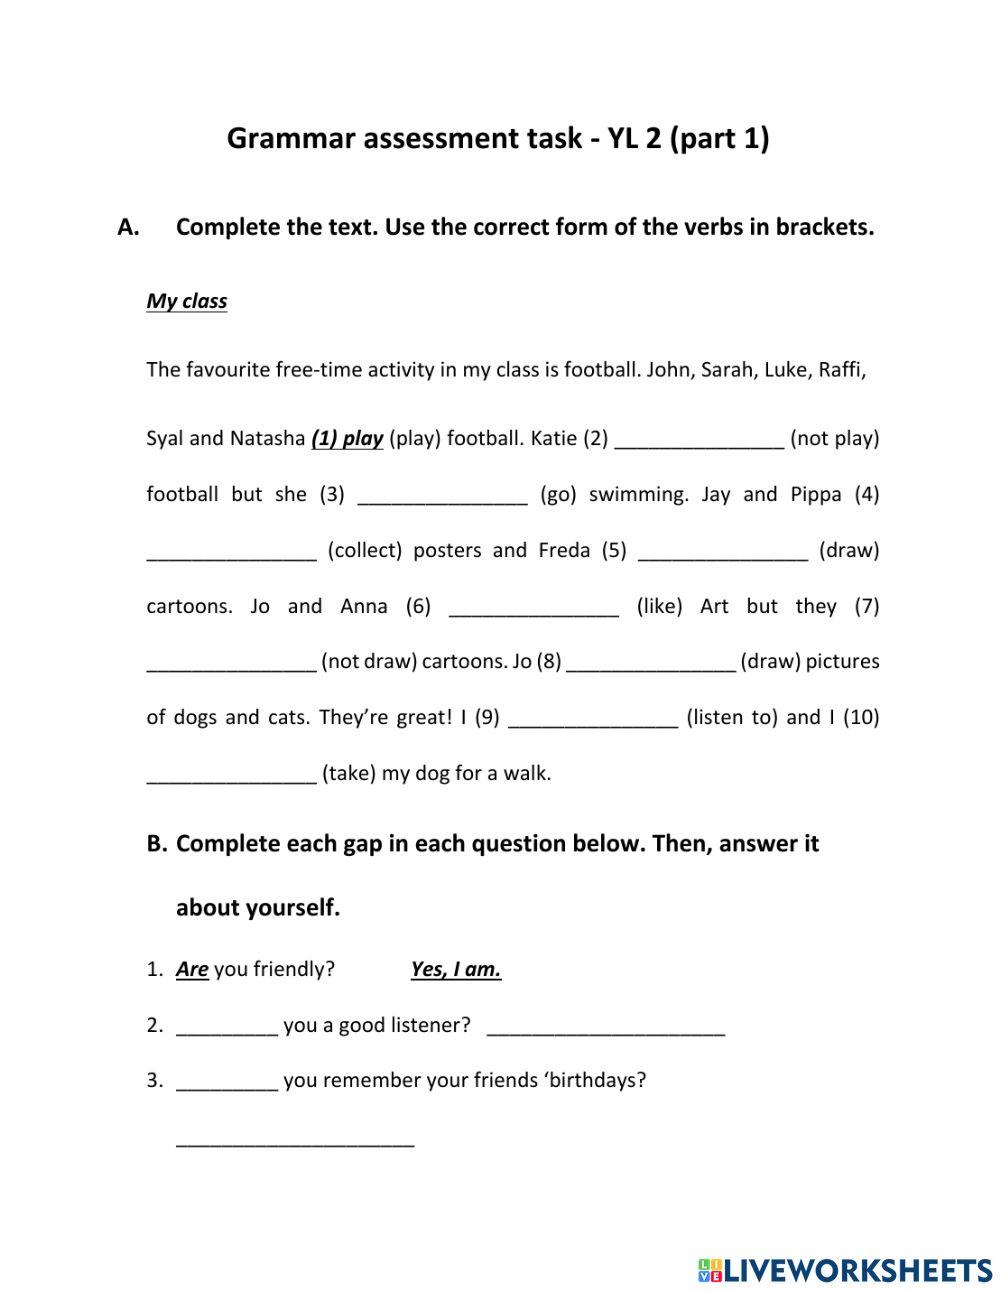 YL 2 - Grammar assessment (part 1)